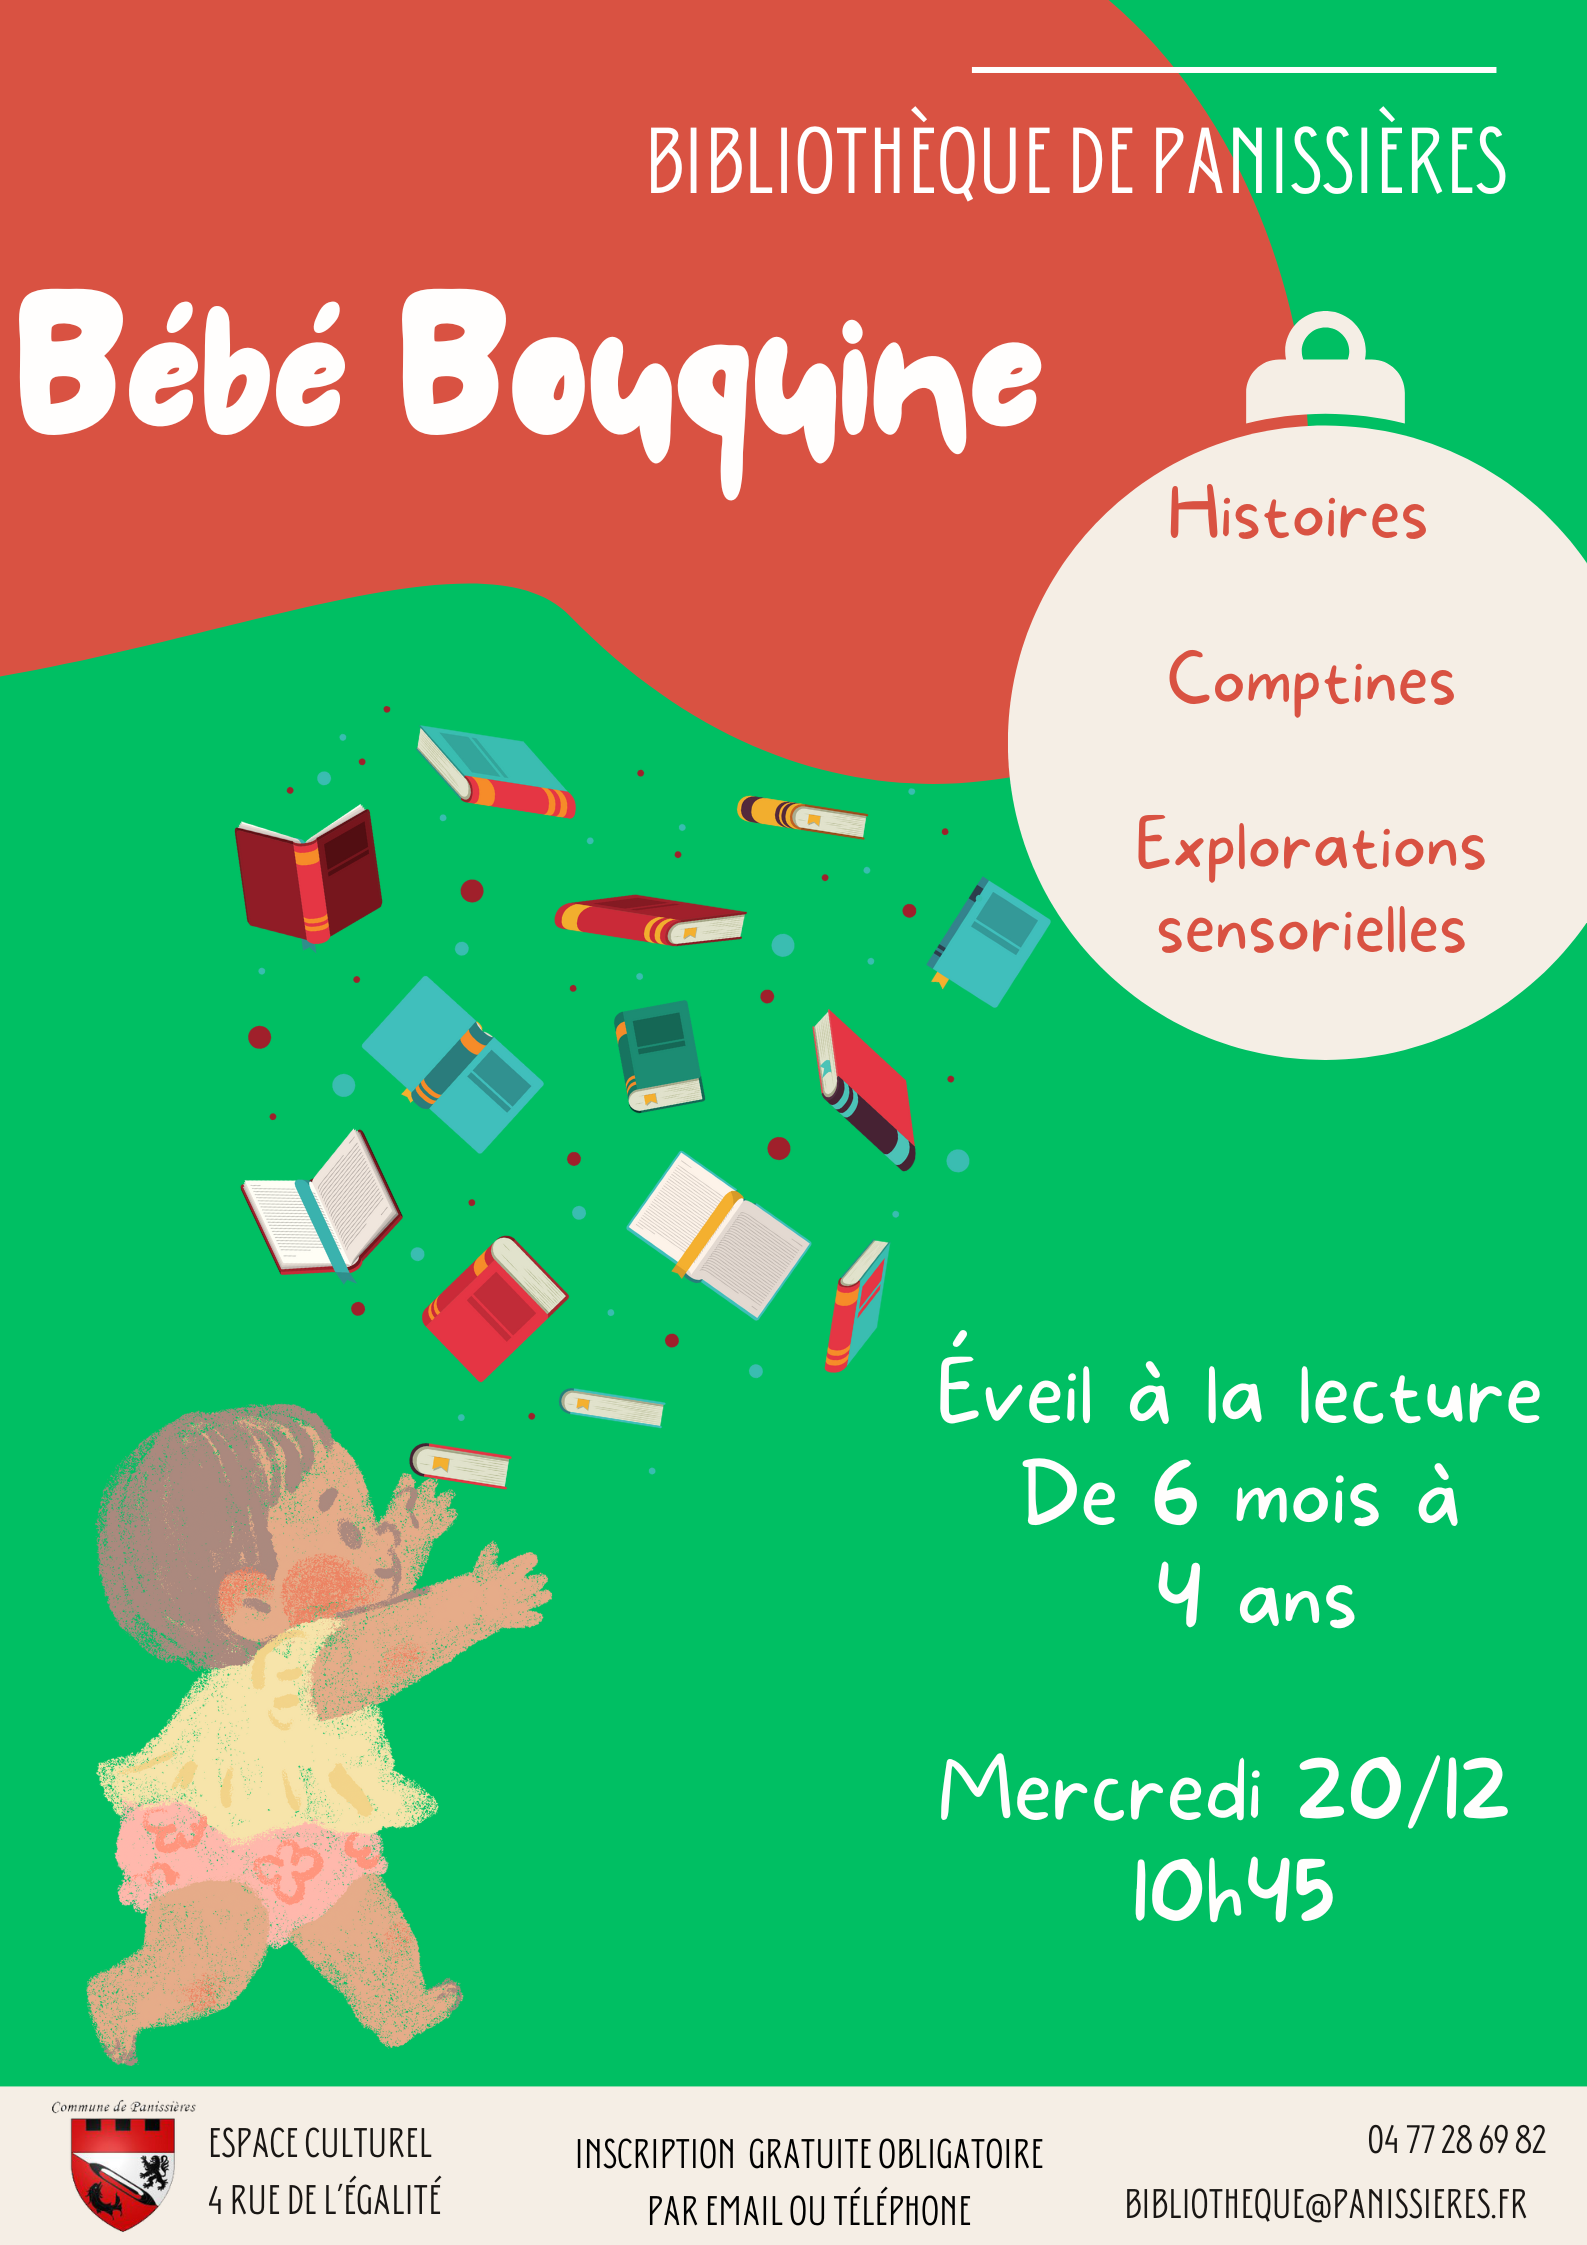 You are currently viewing Le 20 décembre, Bébé bouquine à la bibliothèque